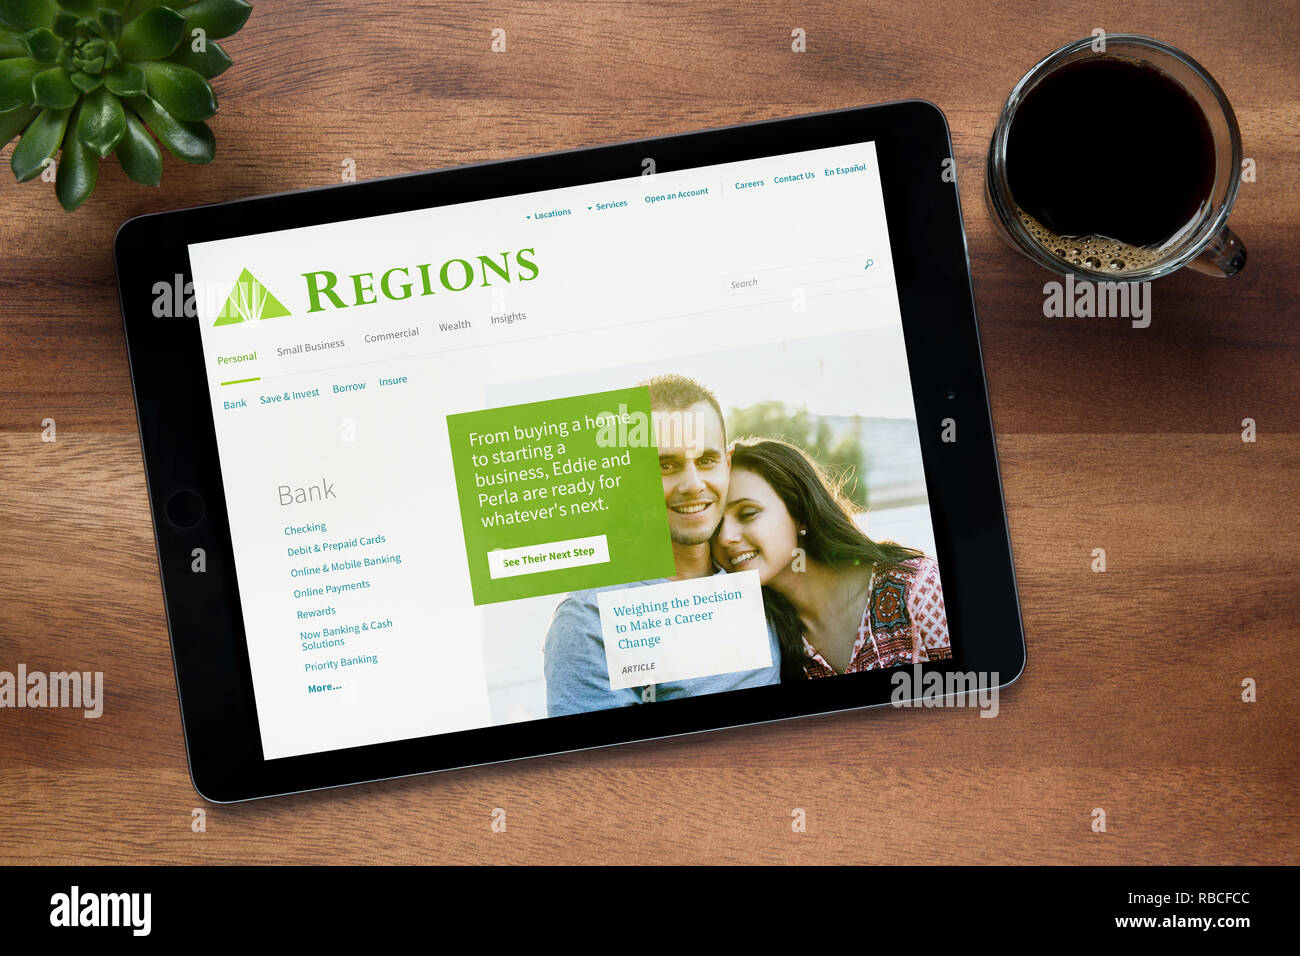 Le site web de la Société financière des régions est vu sur un iPad tablet, reposant sur un sol en bois (usage éditorial uniquement). Banque D'Images